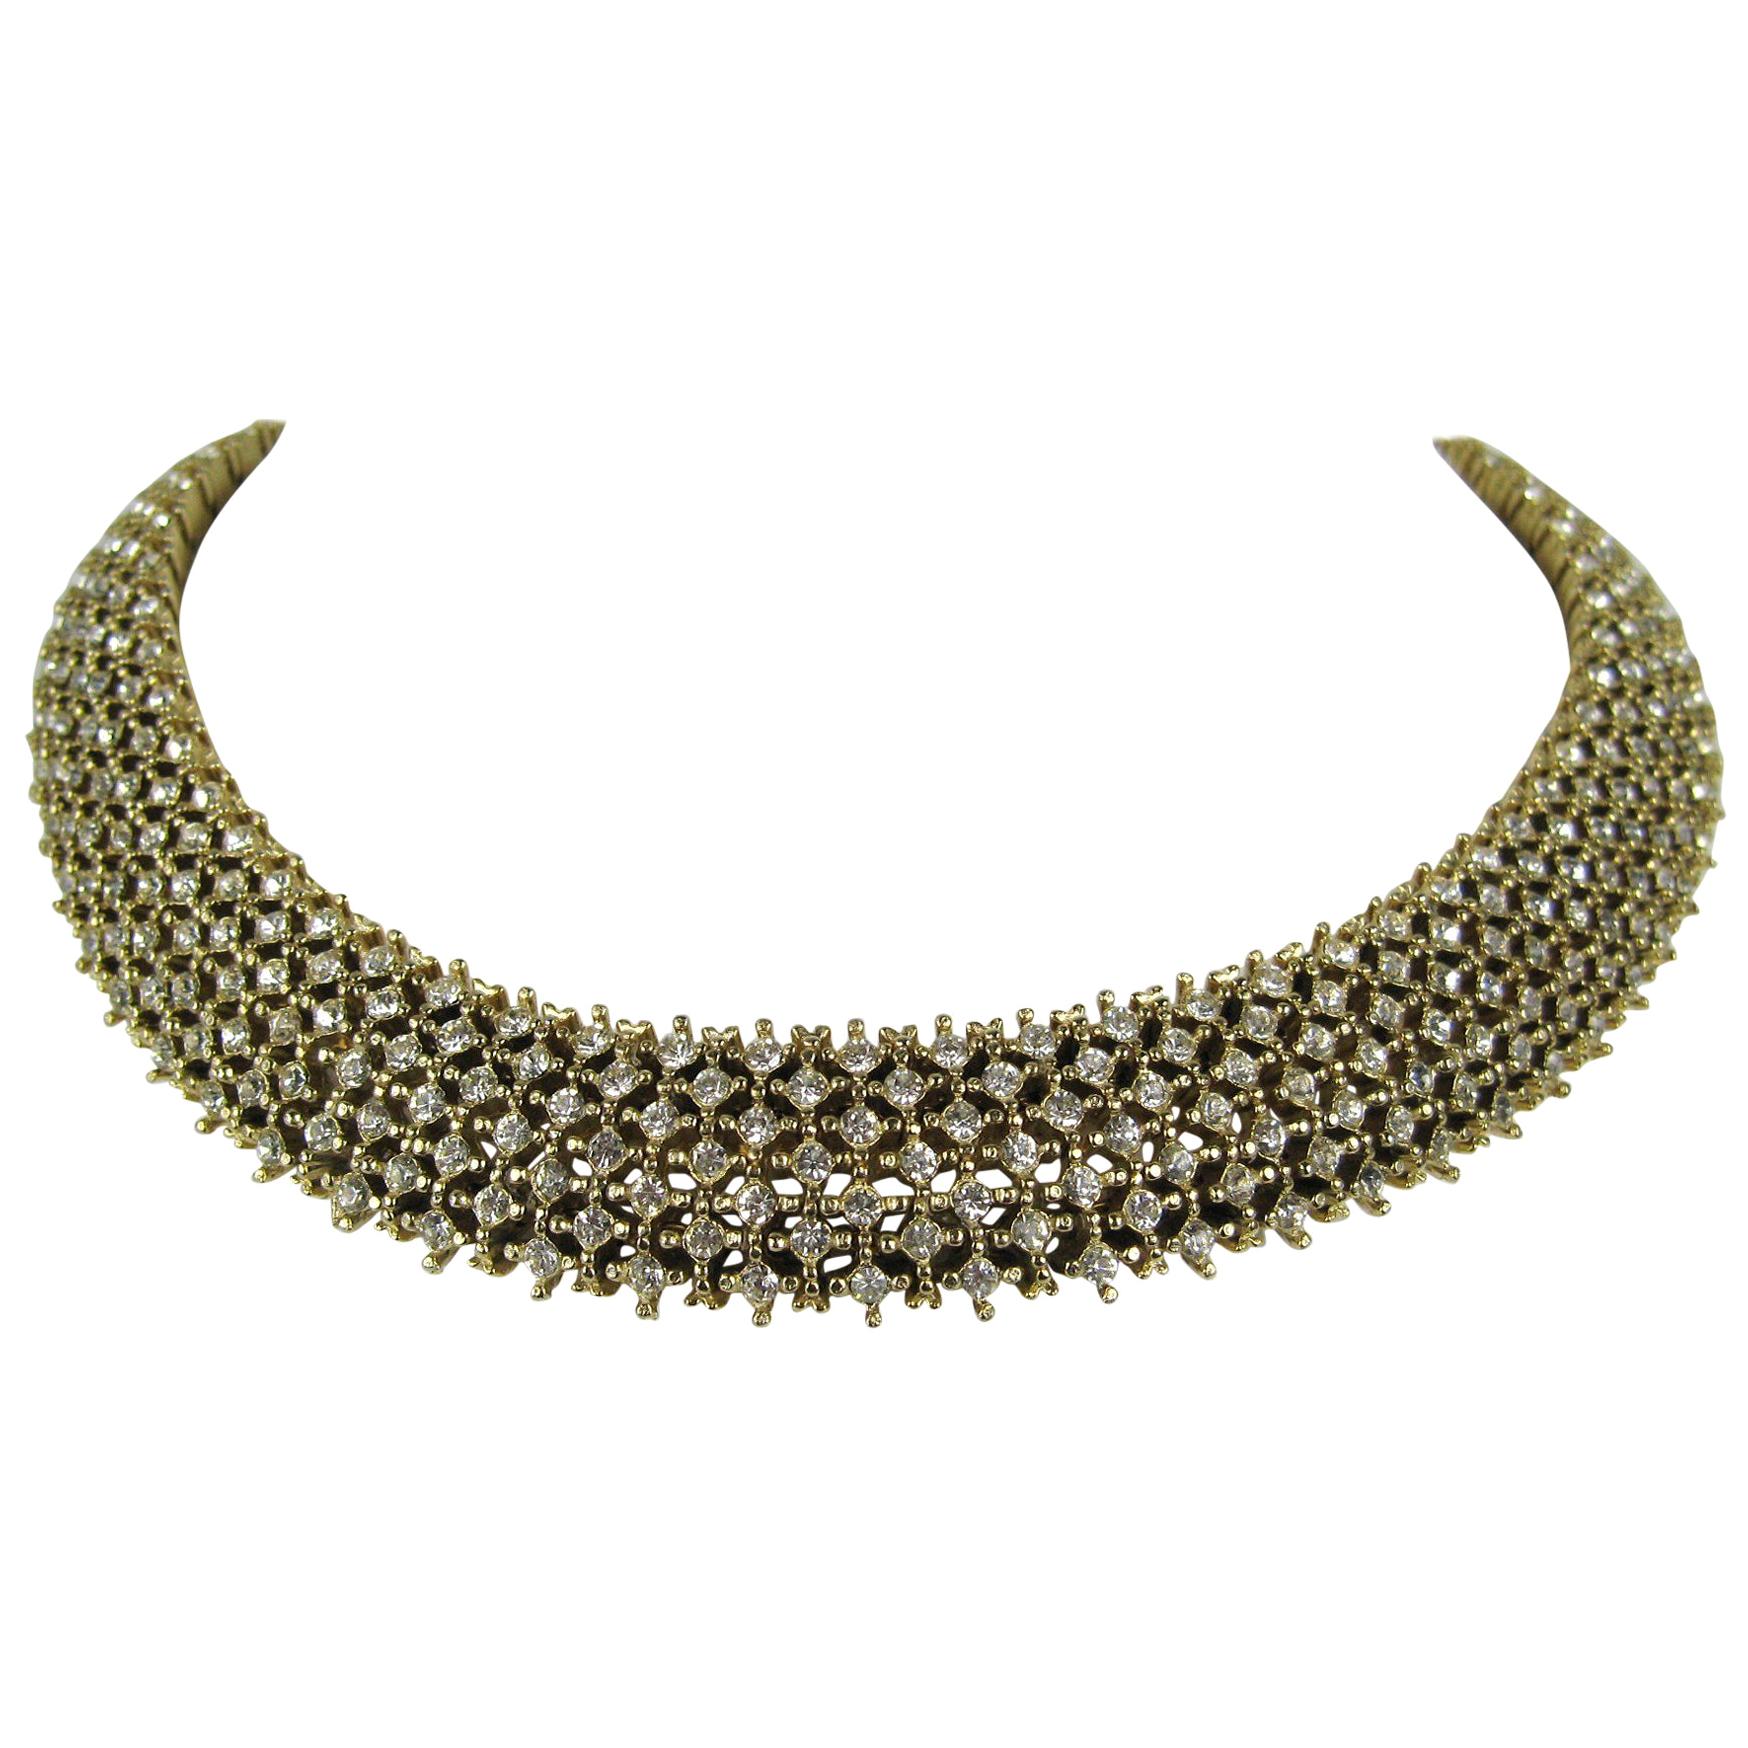  Les Bernard Encrusted Crystal Choker Necklace Never Worn - Vintage  For Sale